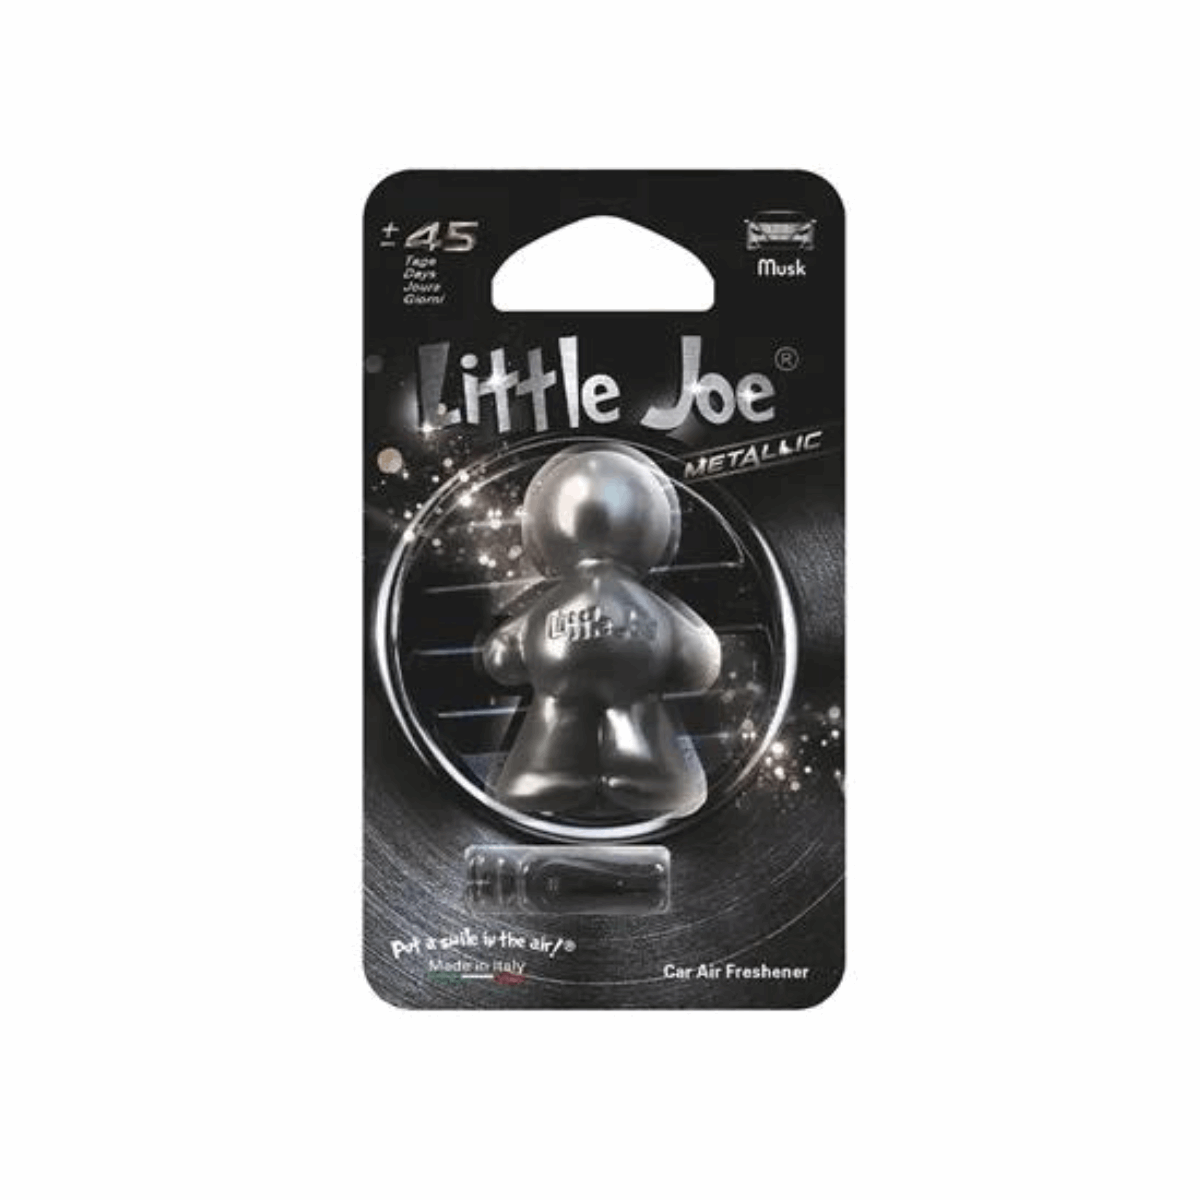 Little Joe luchtverfrisser - Metallic Silver - Musk